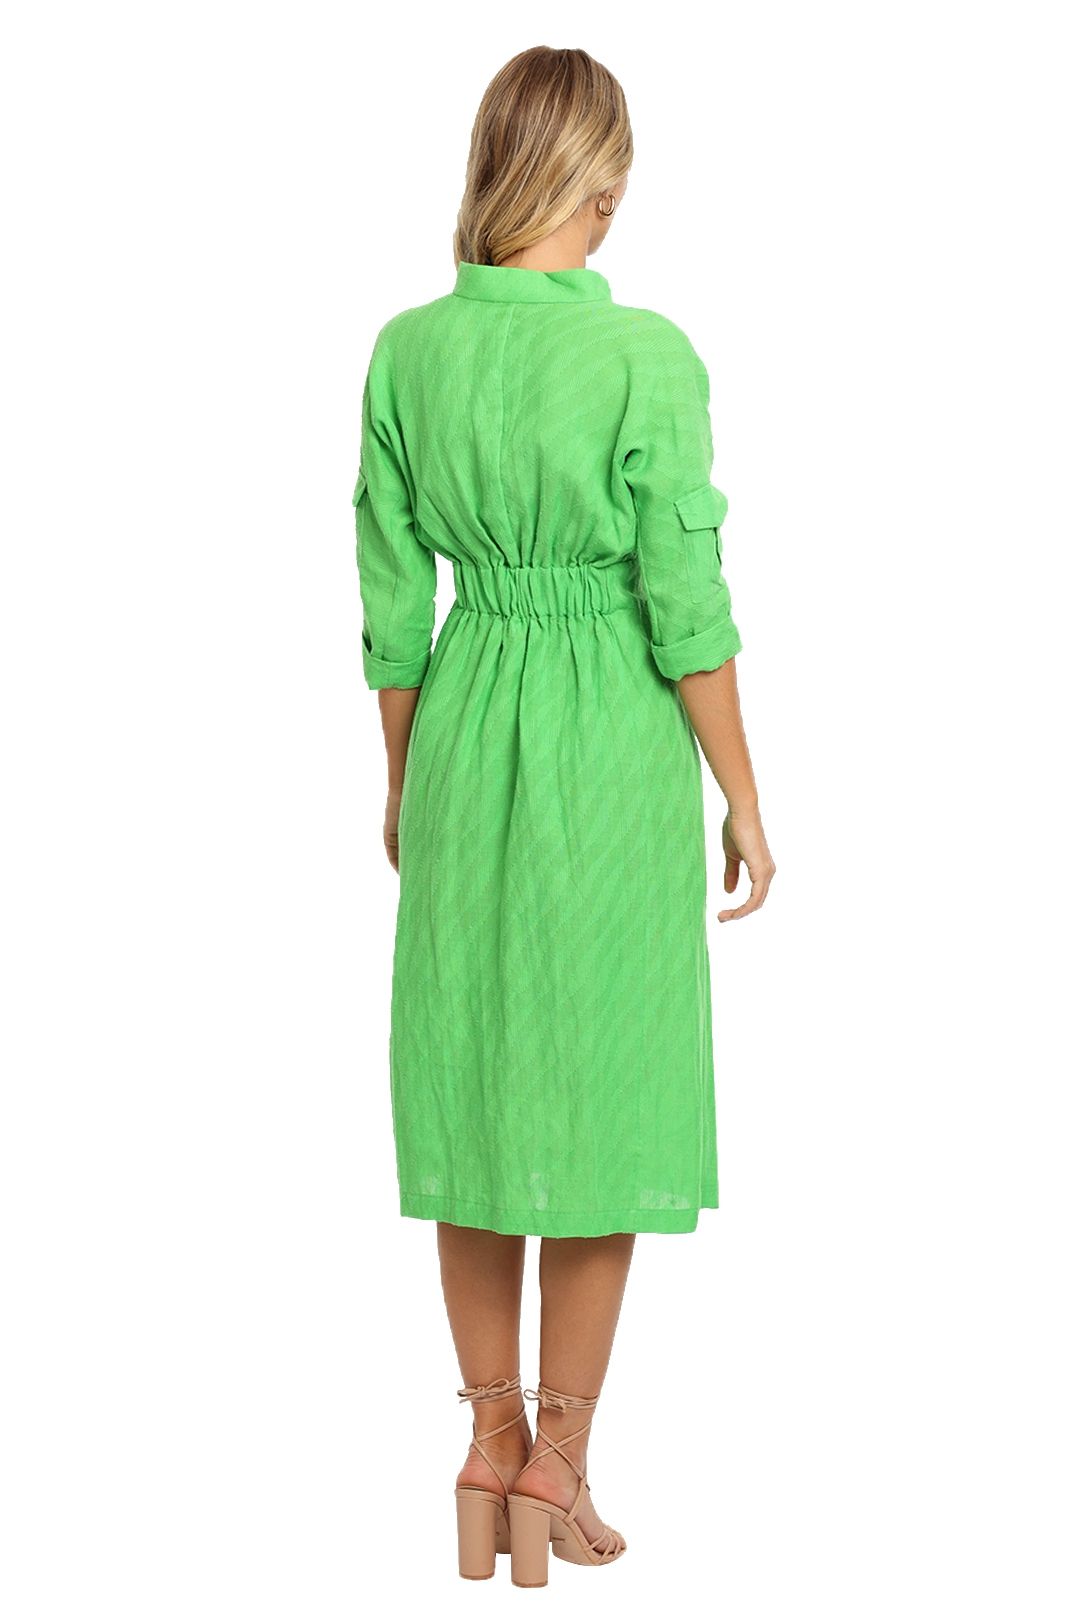 KITX Linen Safari Dress Green midi